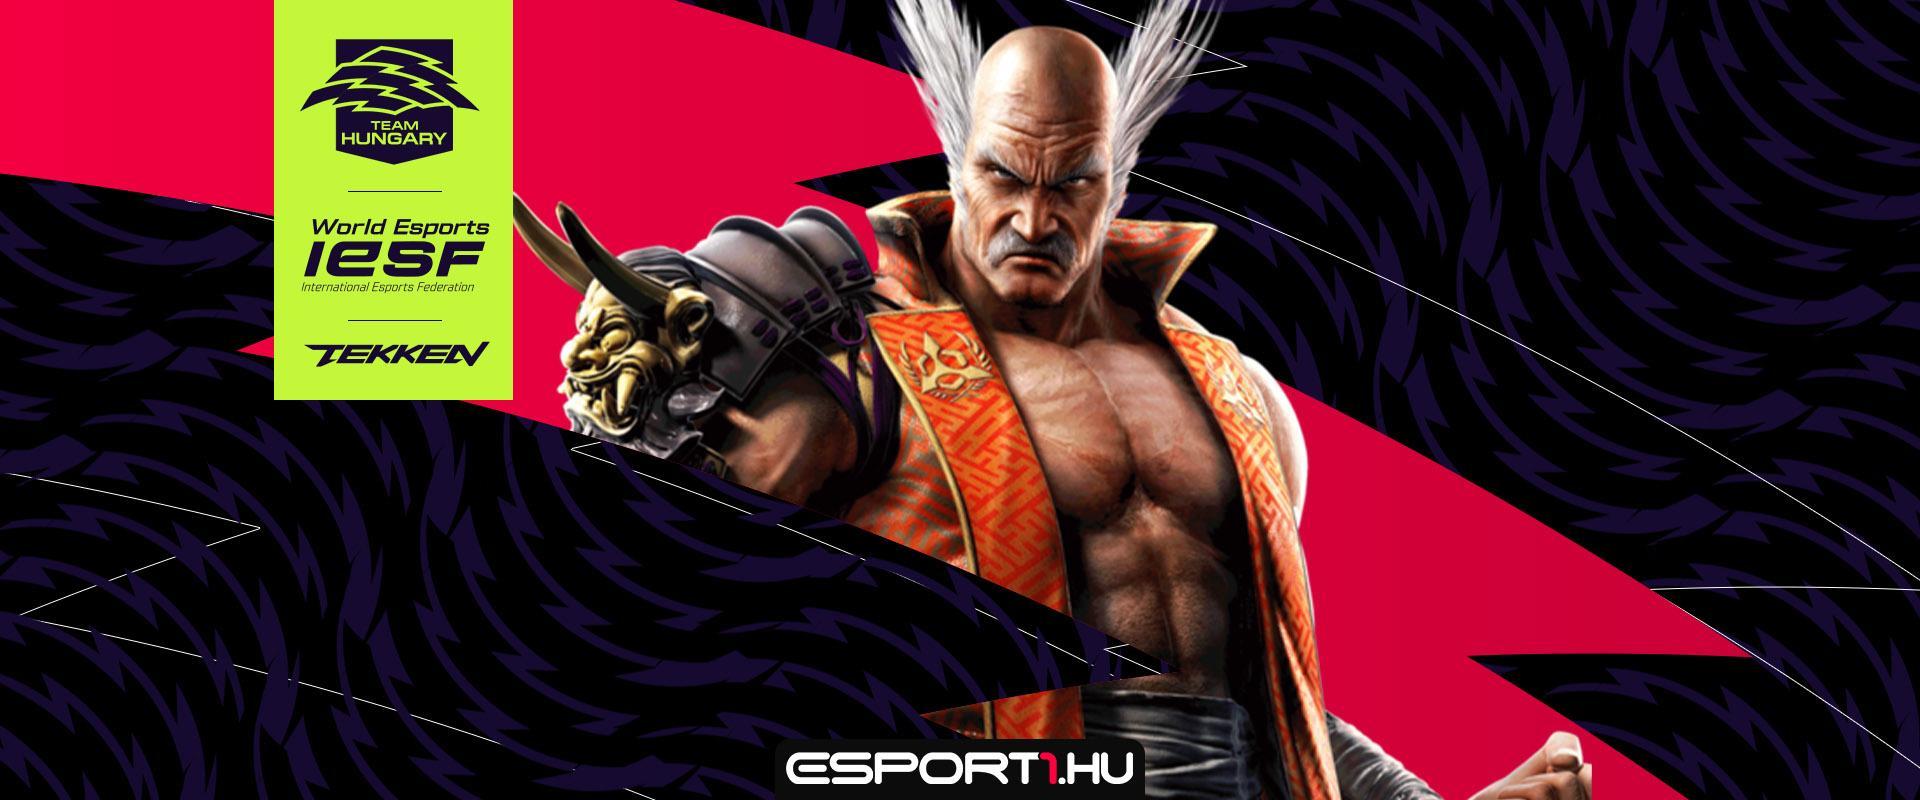 IESF vb: kisorsolták a Magyar E-sport Válogatott Tekken-játékosának csoportját is